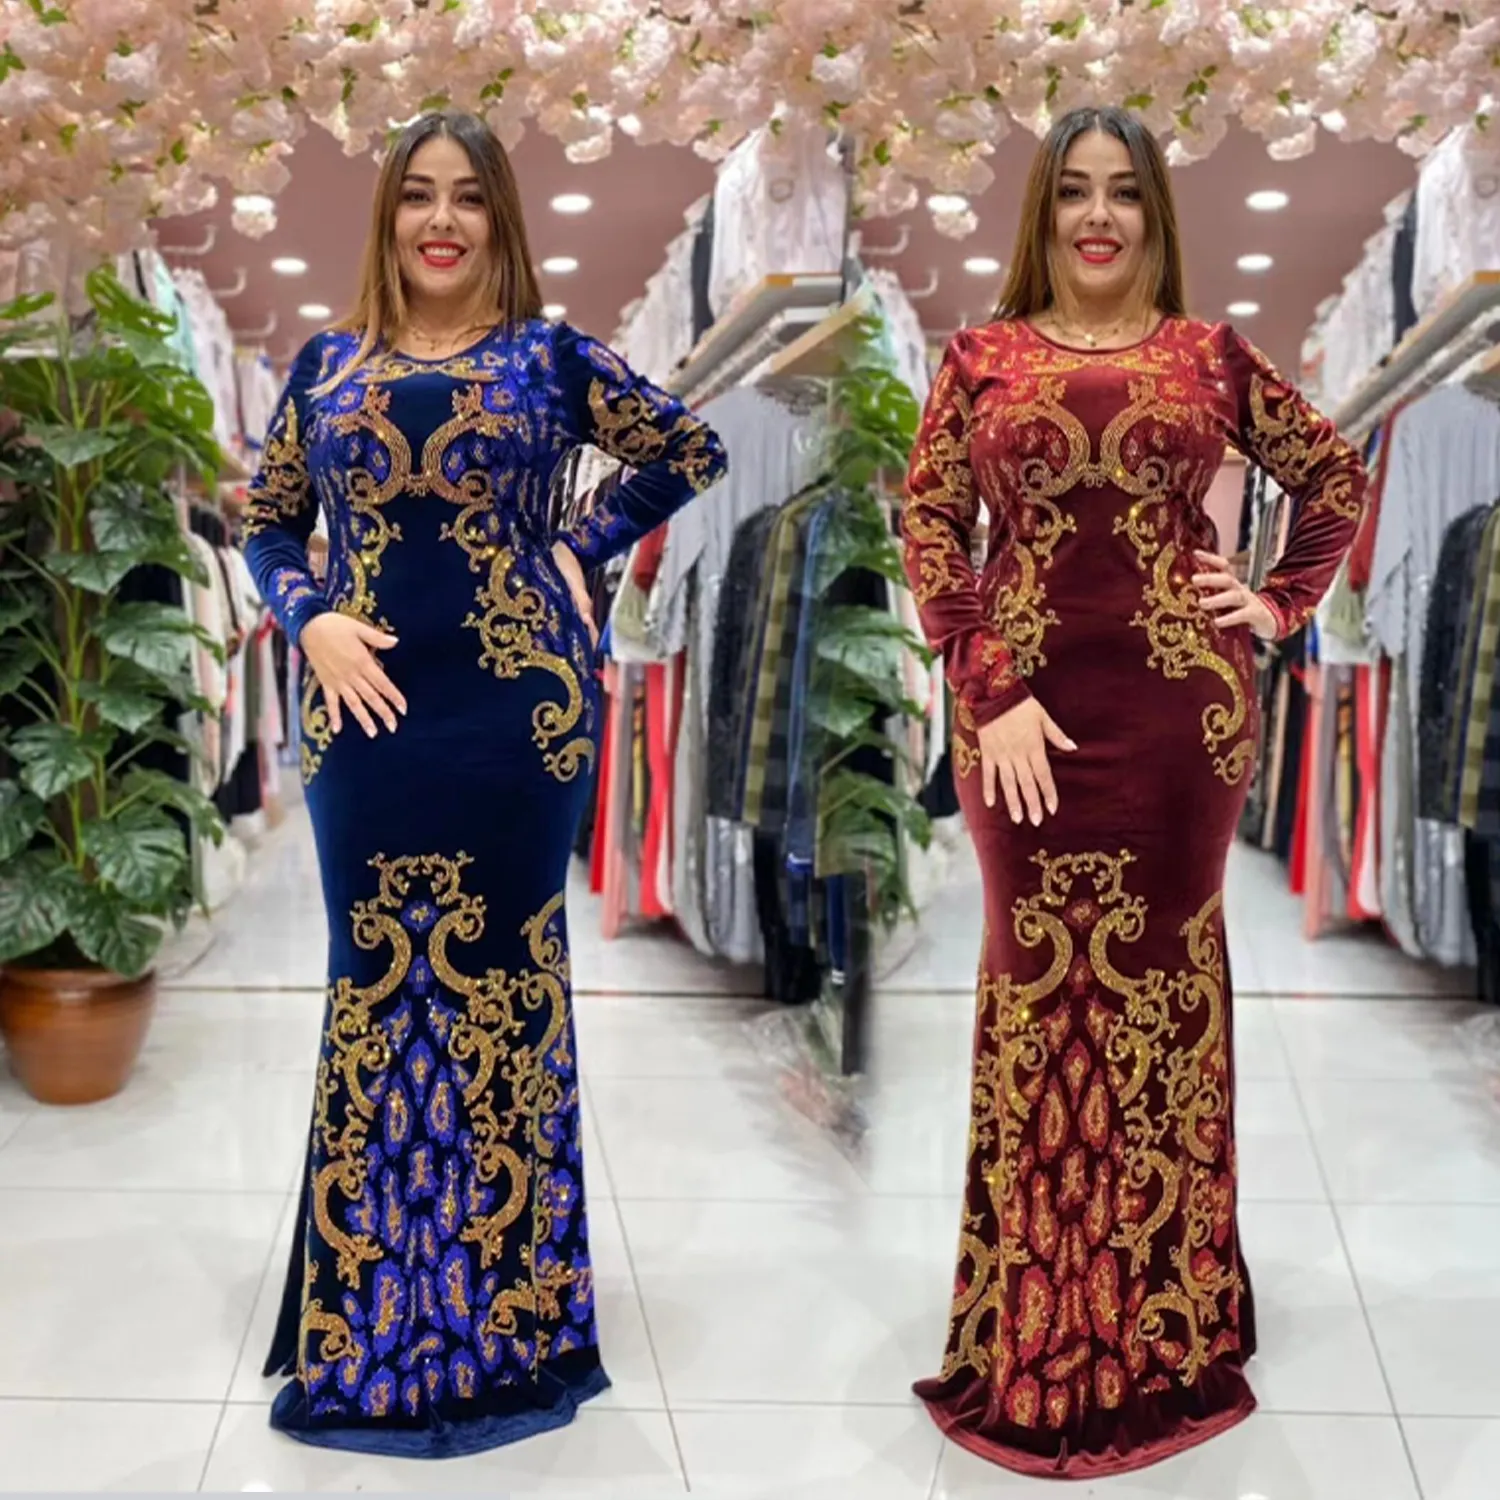 イスラム教徒のローブヨーロッパパーティー伝統的なイスラム教徒の服誕生日の夜の結婚式中東ロシアとアフリカのドレス